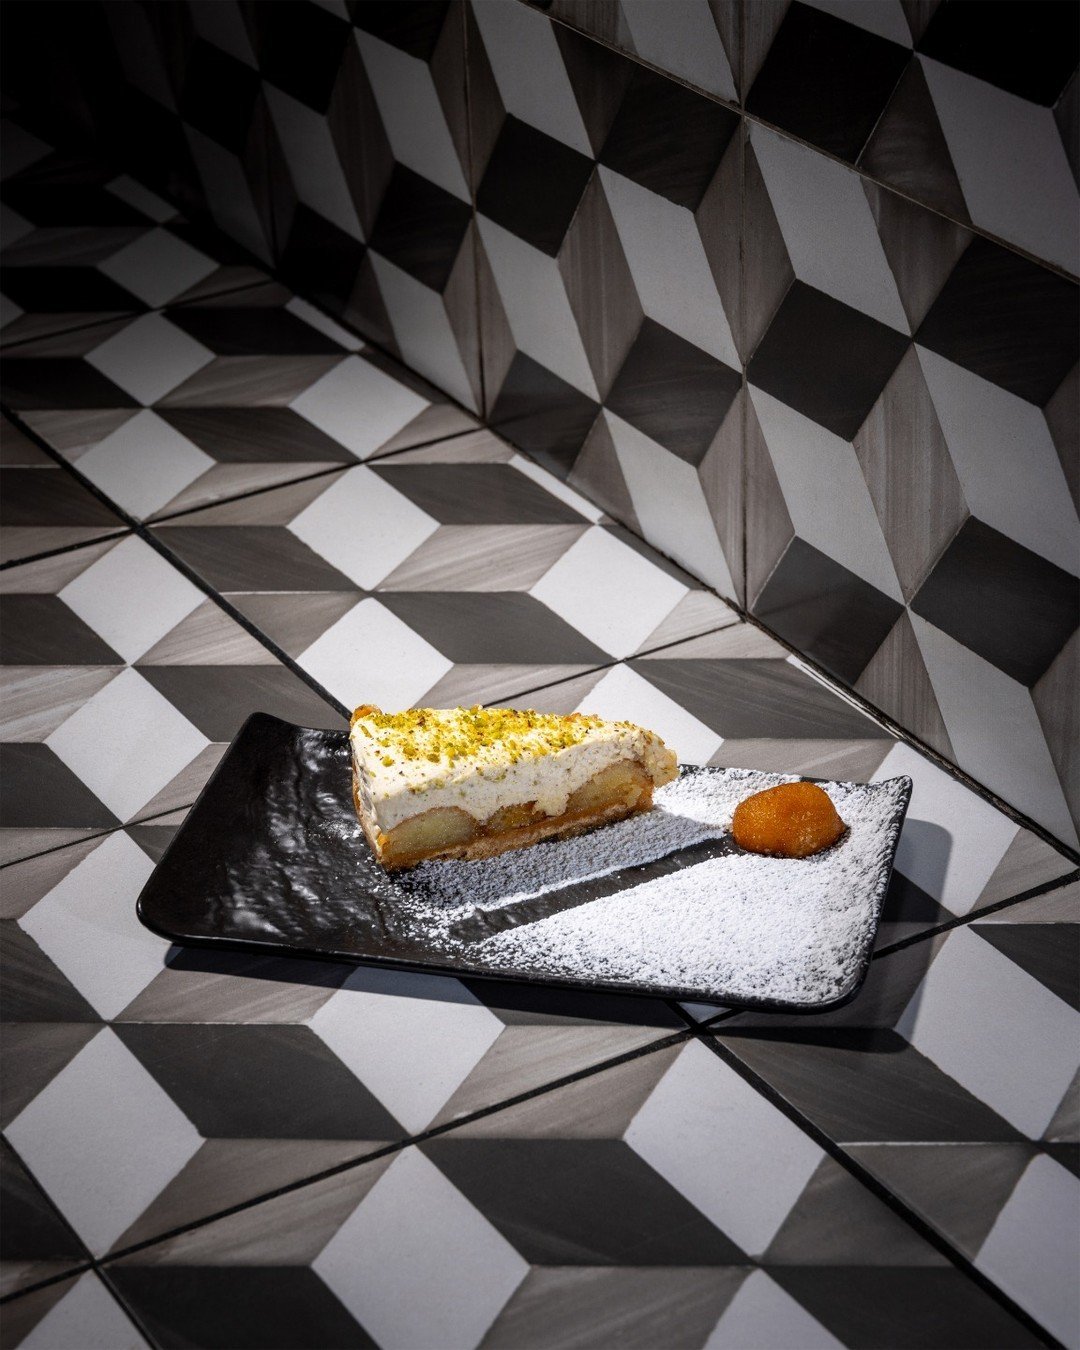 Unsere Stammkunden kennen &amp; lieben ihn, unseren Cheesecake 🍰 - Ein muss f&uuml;r jedes Zuckermaul! 

#sweet#cheesecake#restaurant